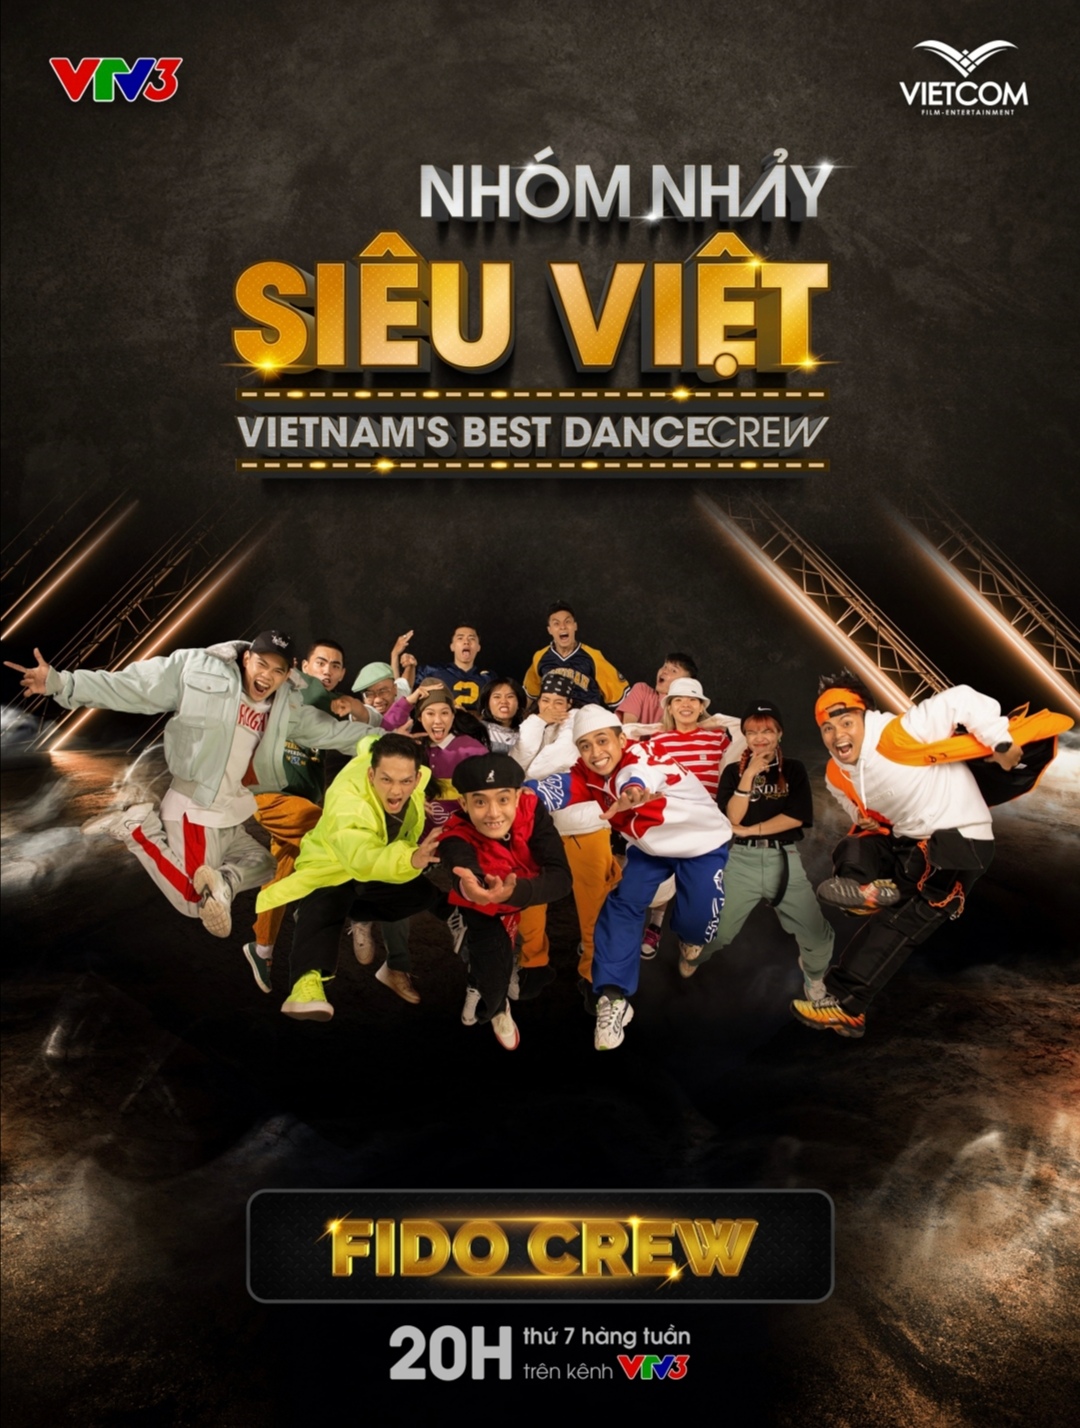 Screenshot 20210519 171858 Biên đạo Alex Tú mang nhóm nhảy đến với sân chơi Nhóm nhảy siêu Việt   Vietnam’s Best Dance Crew